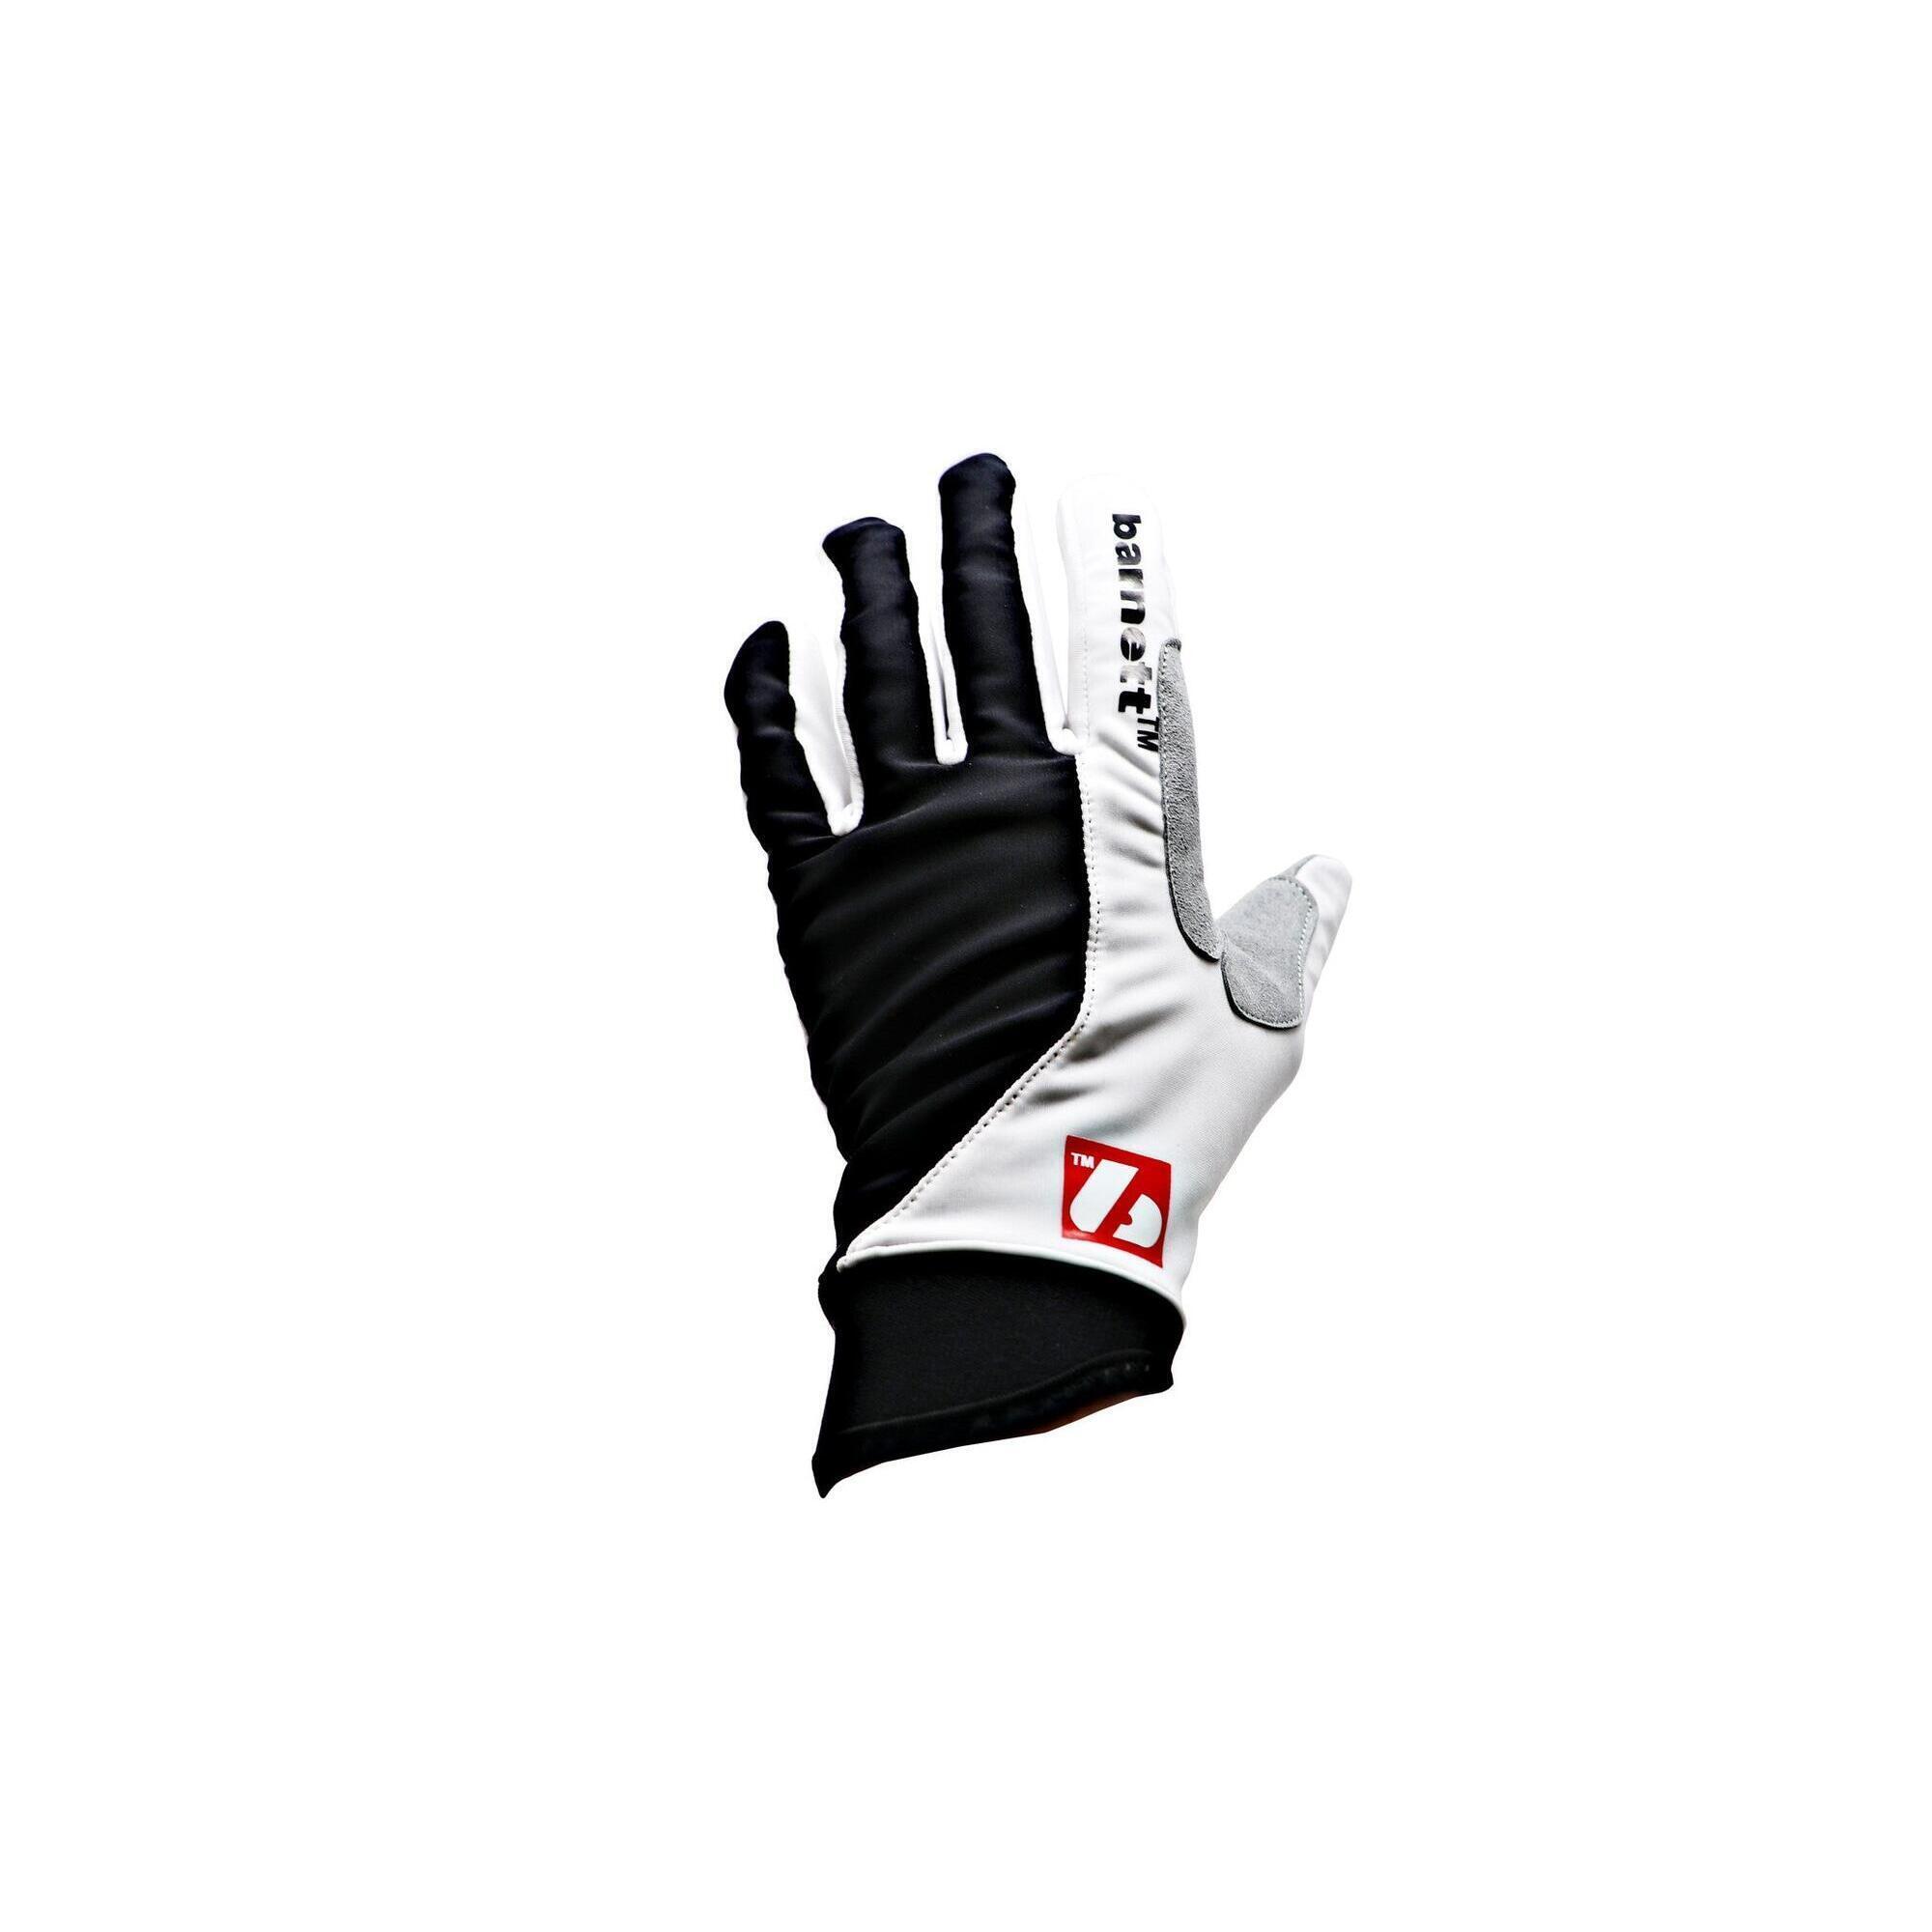 BARNETT  NBG-01 winter gloves for cross-country skiing